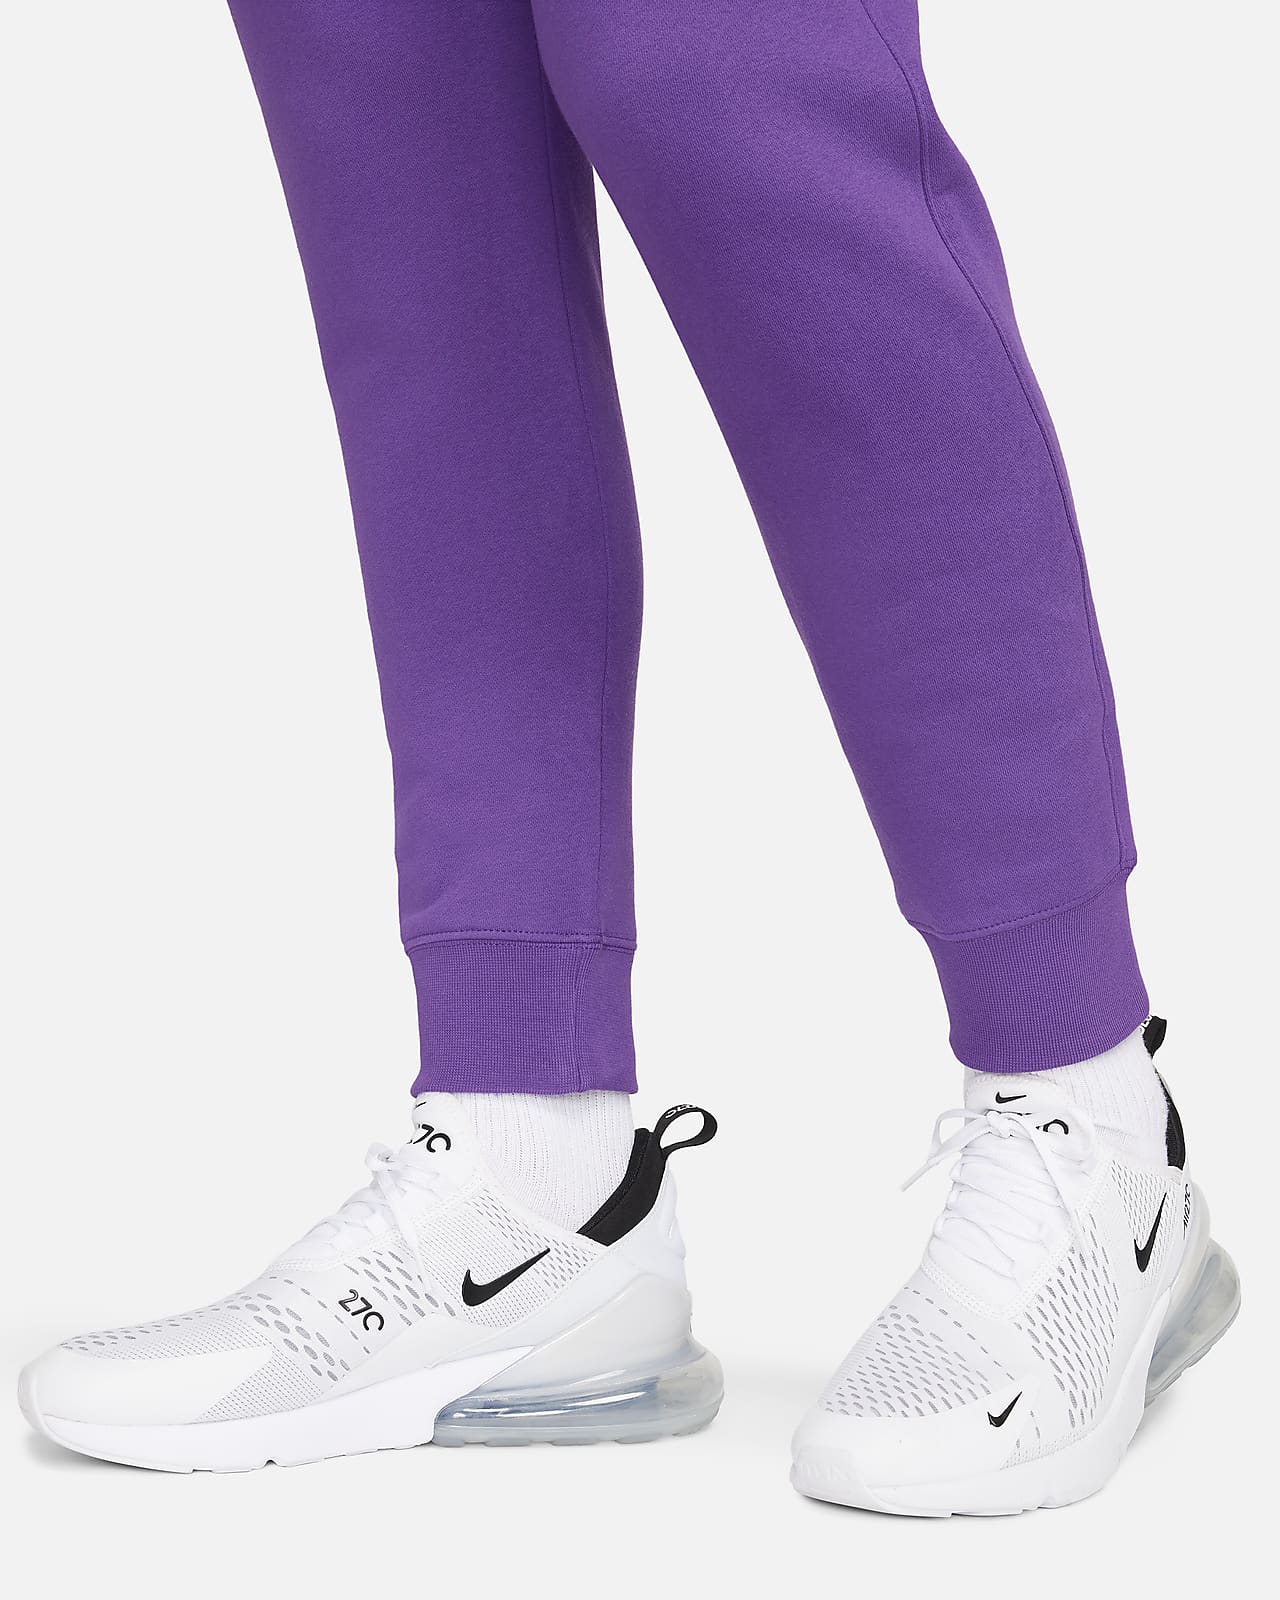 Pantalons de Survêtement - Winter Style - Nike Foundation